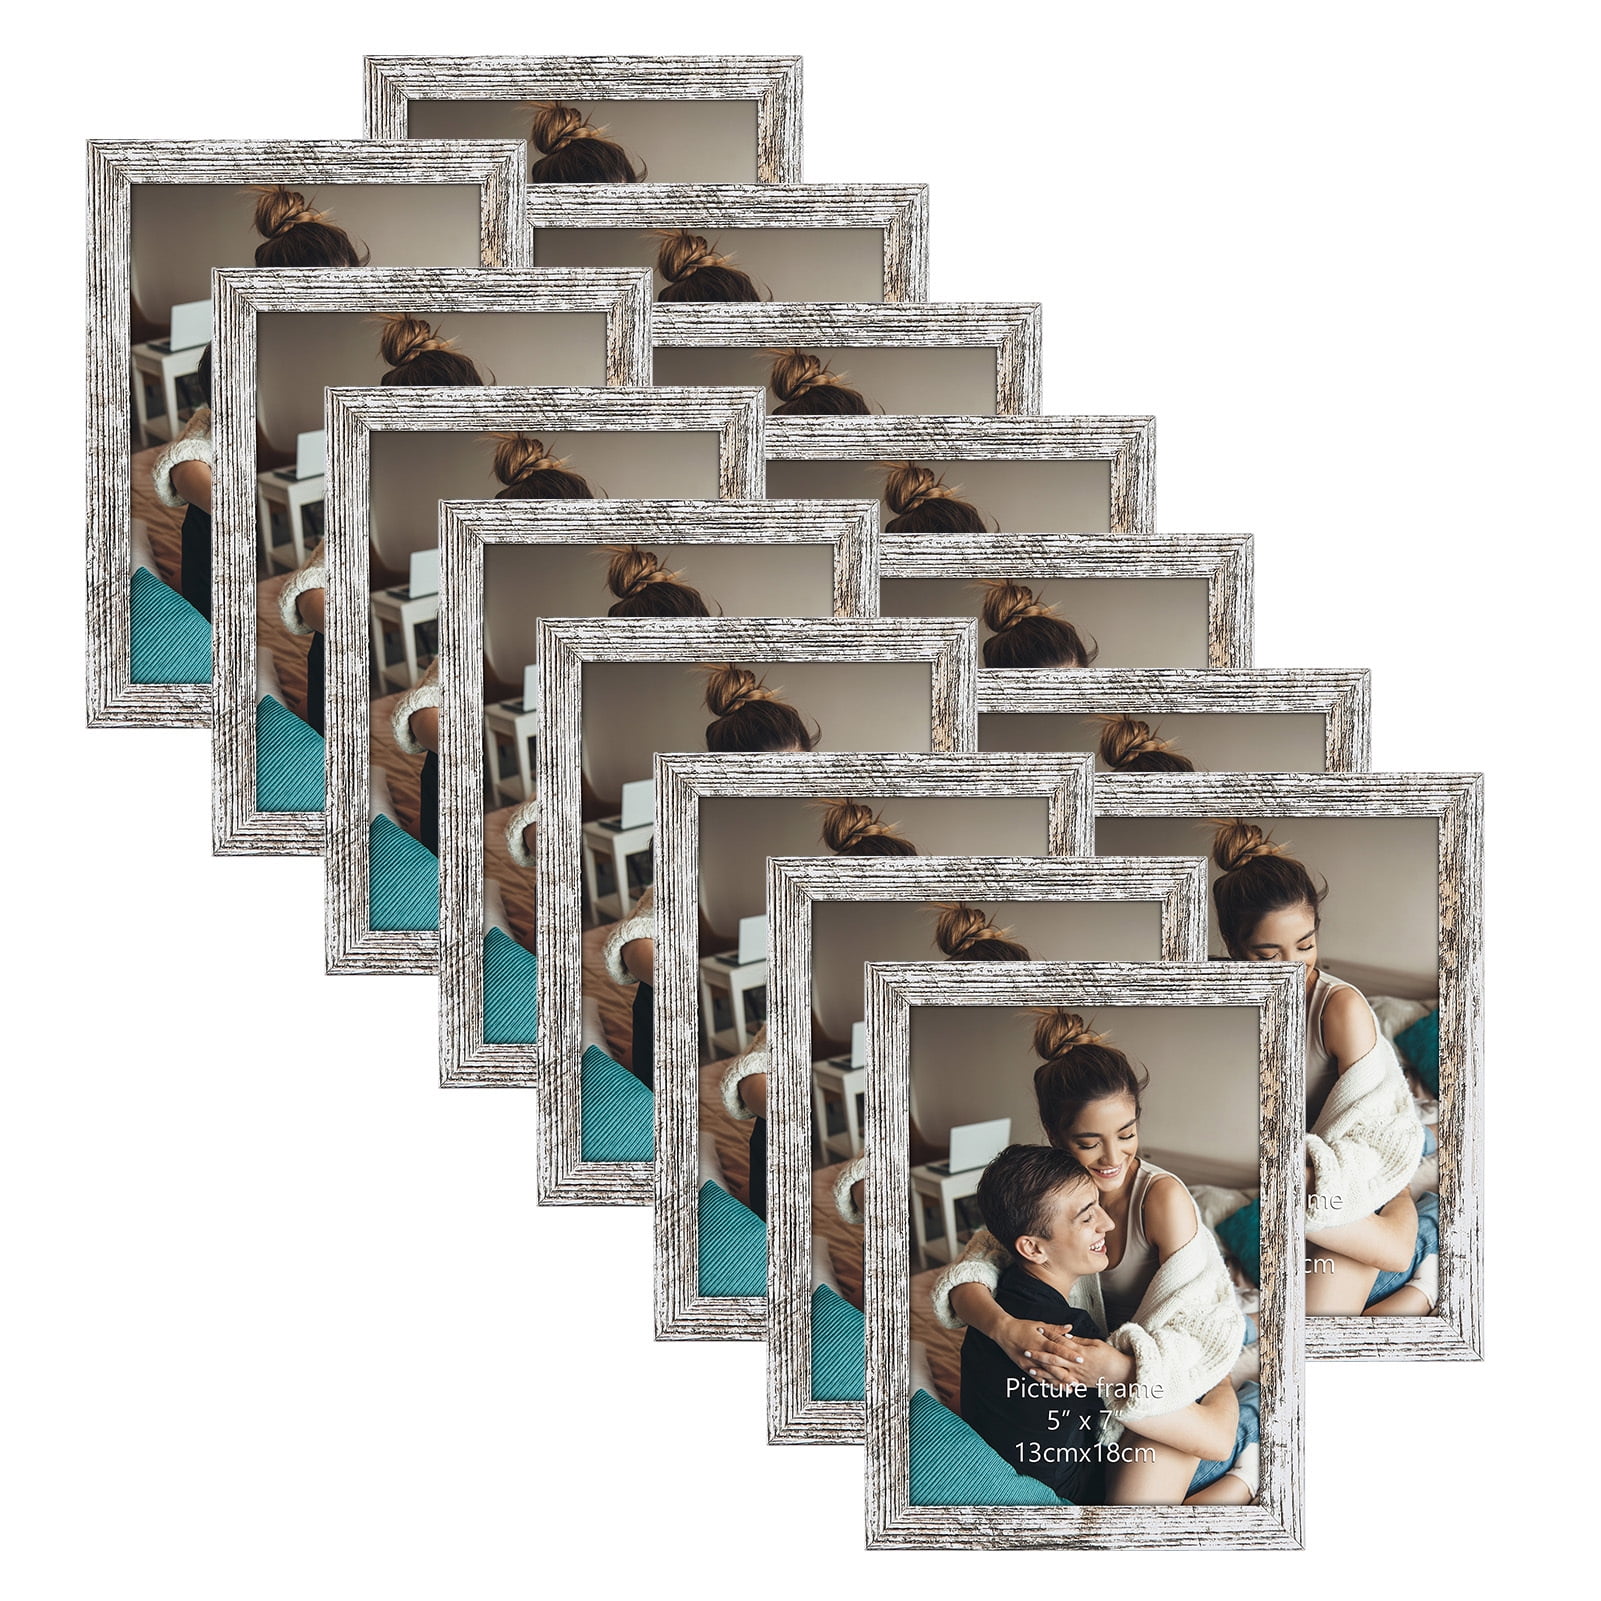 5 x 7 picture frames  Online framing service – Frameology